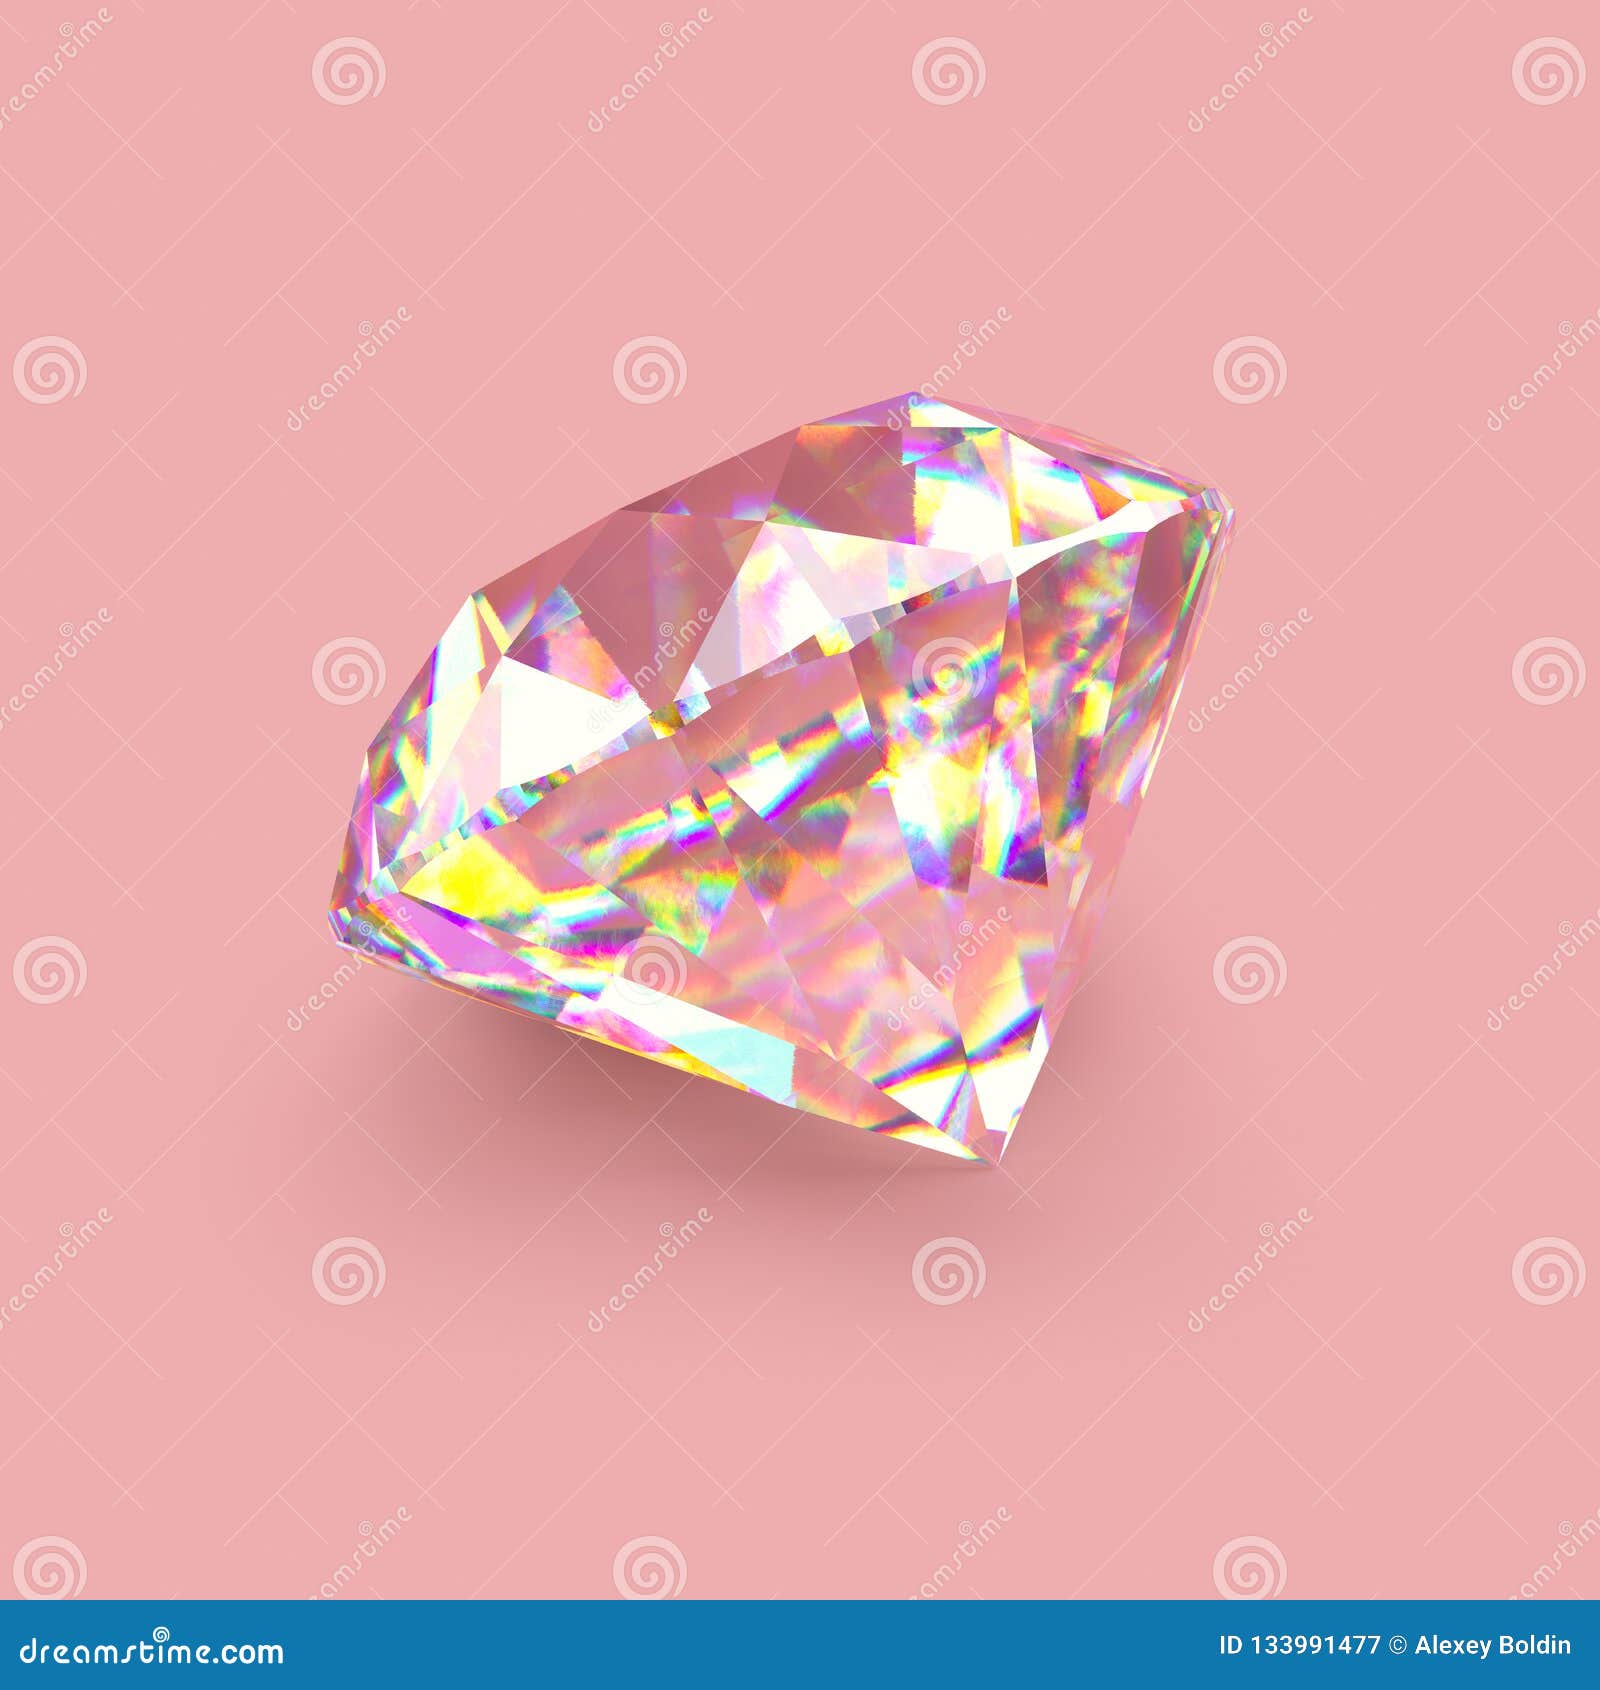 Những viên kim cương toả sáng tinh khiết sẽ khiến bạn không thể rời mắt khỏi chúng. Hãy cùng tìm hiểu ngay hình ảnh liên quan để trải nghiệm những giá trị tuyệt vời nhất của chúng.